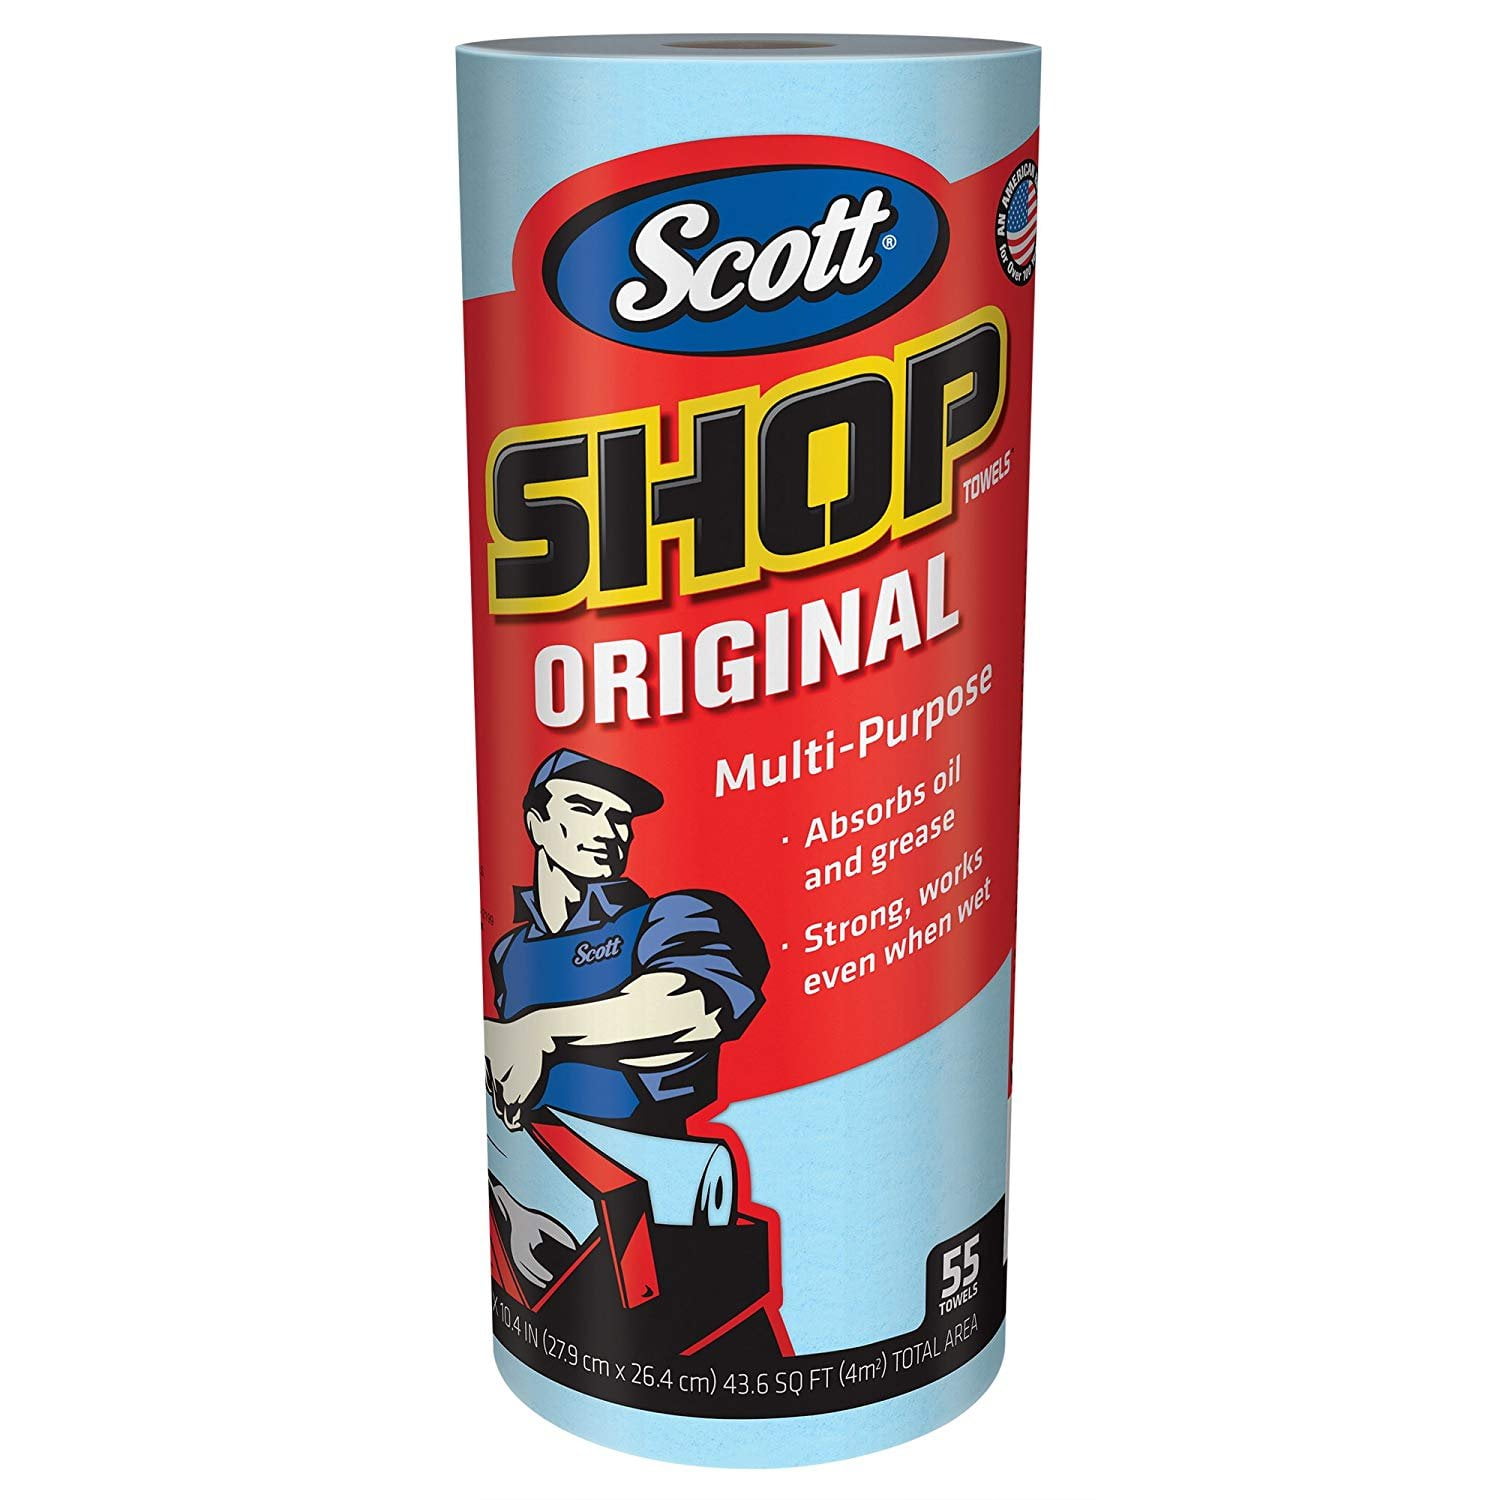 Details about   Scott Shop Towels for Pop-Up Dispenser Box Blue 10" x12" 8 Box 1box 200 sheets 